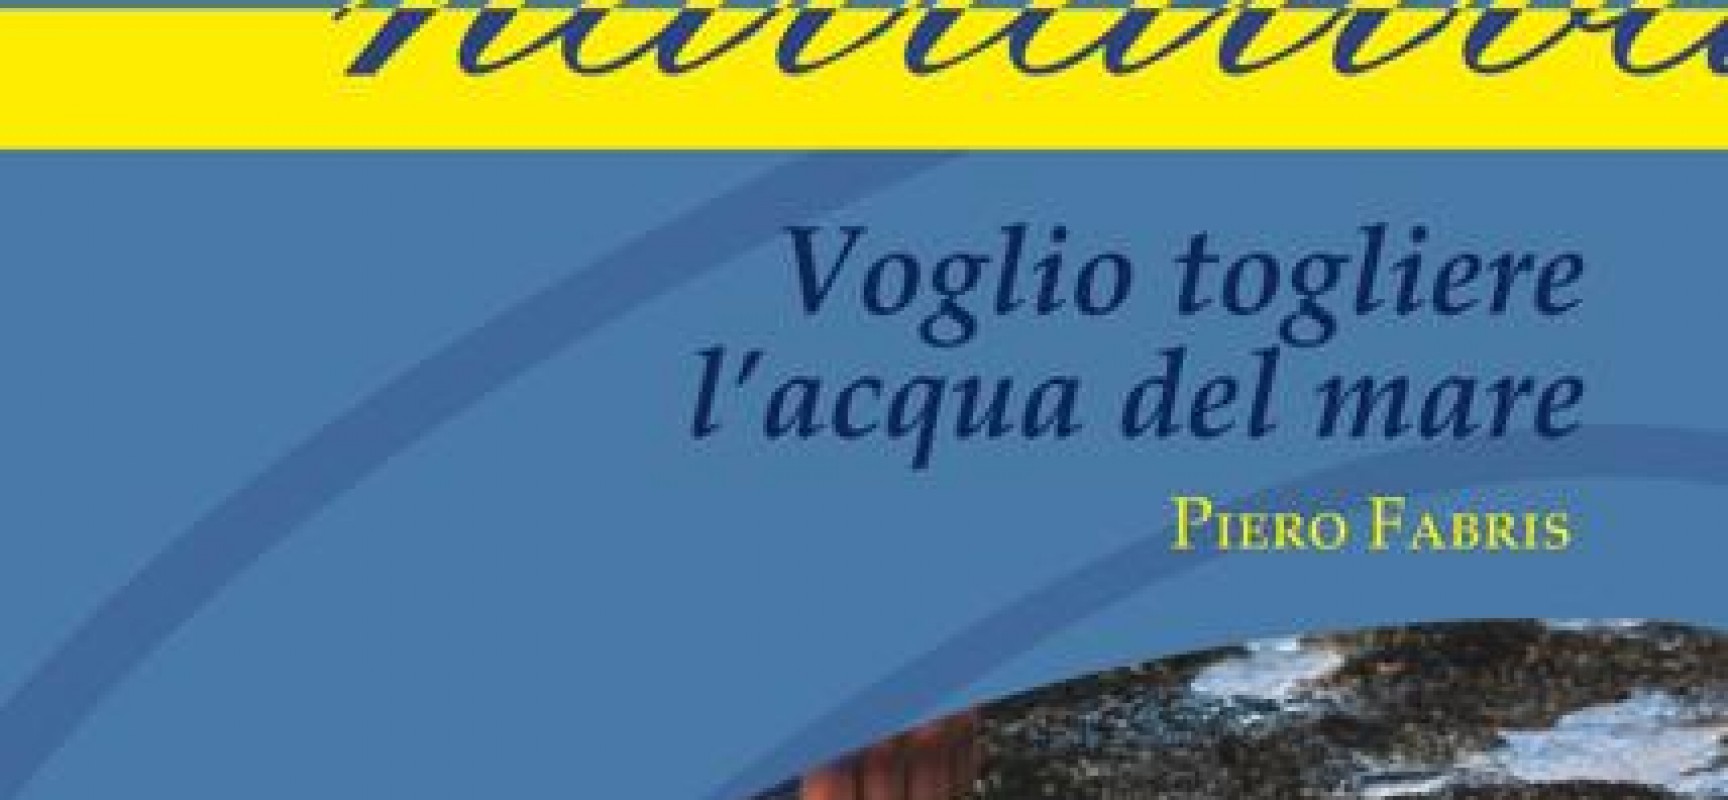 “Voglio togliere l’acqua del mare”, romanzo sull’autismo: presentazione il 19 febbraio al Vesparossa